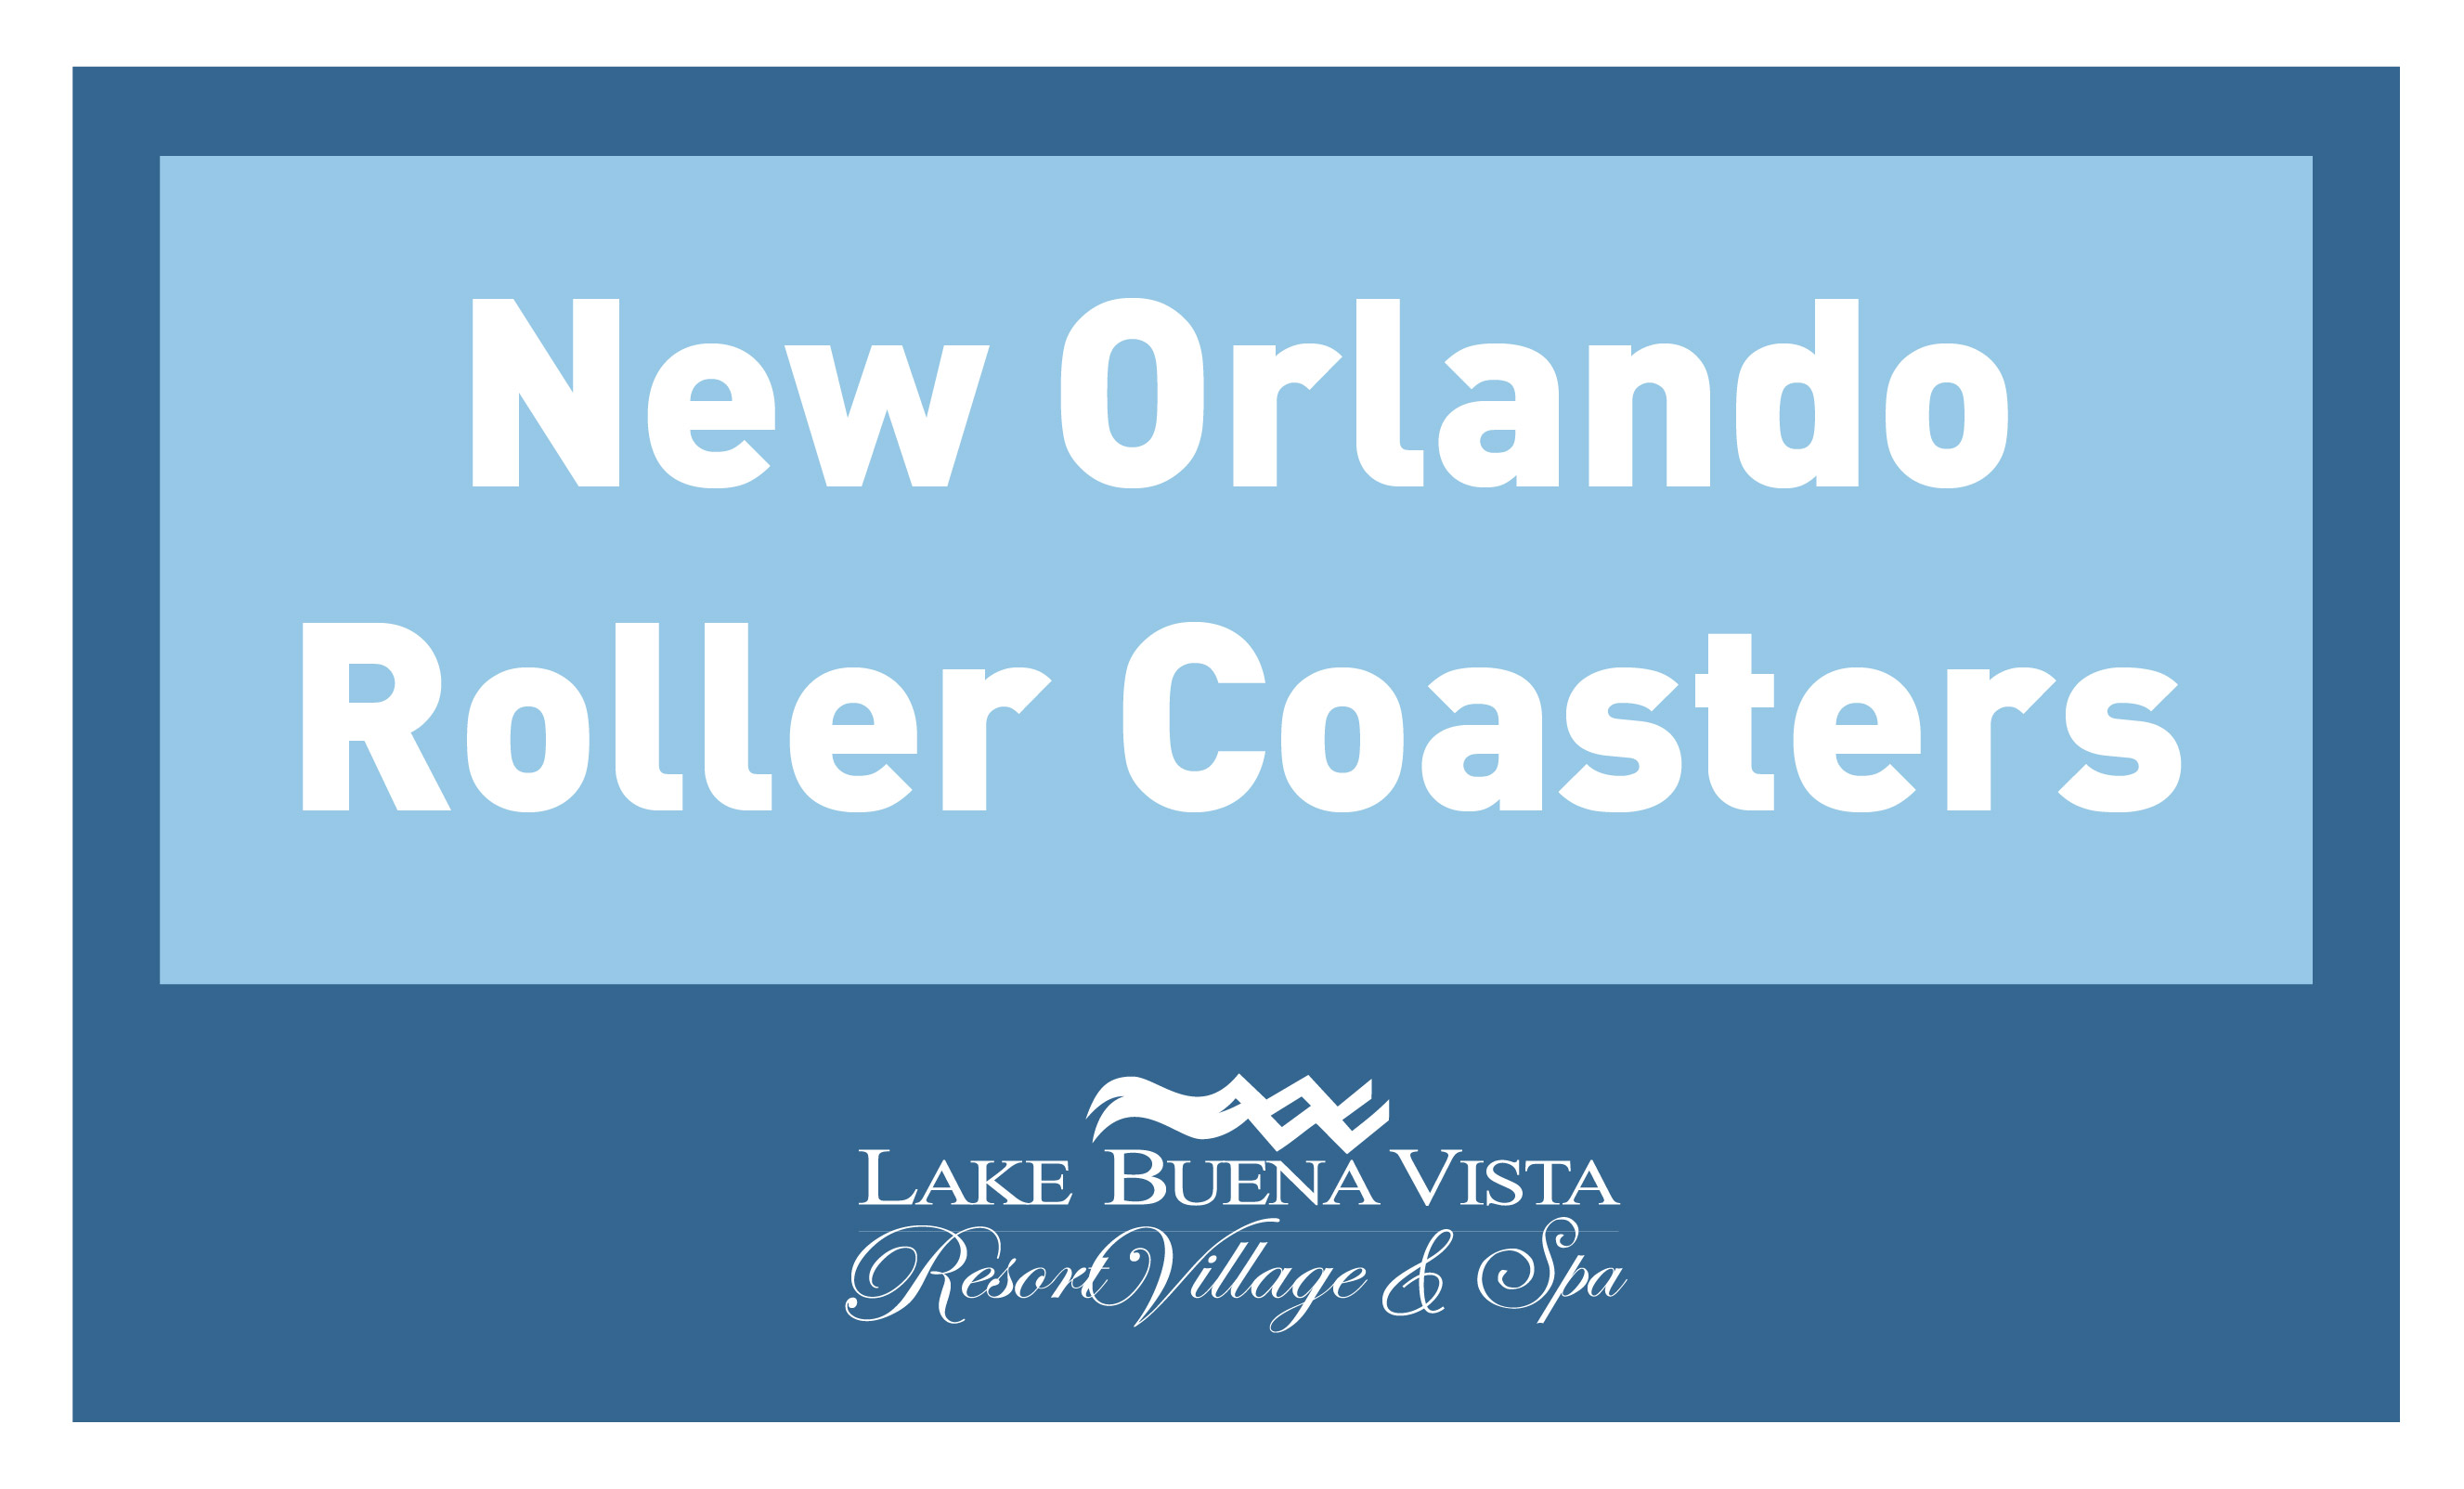 Lake Buena Vista Resort Village & Spa - New Orlando Roller Coasters